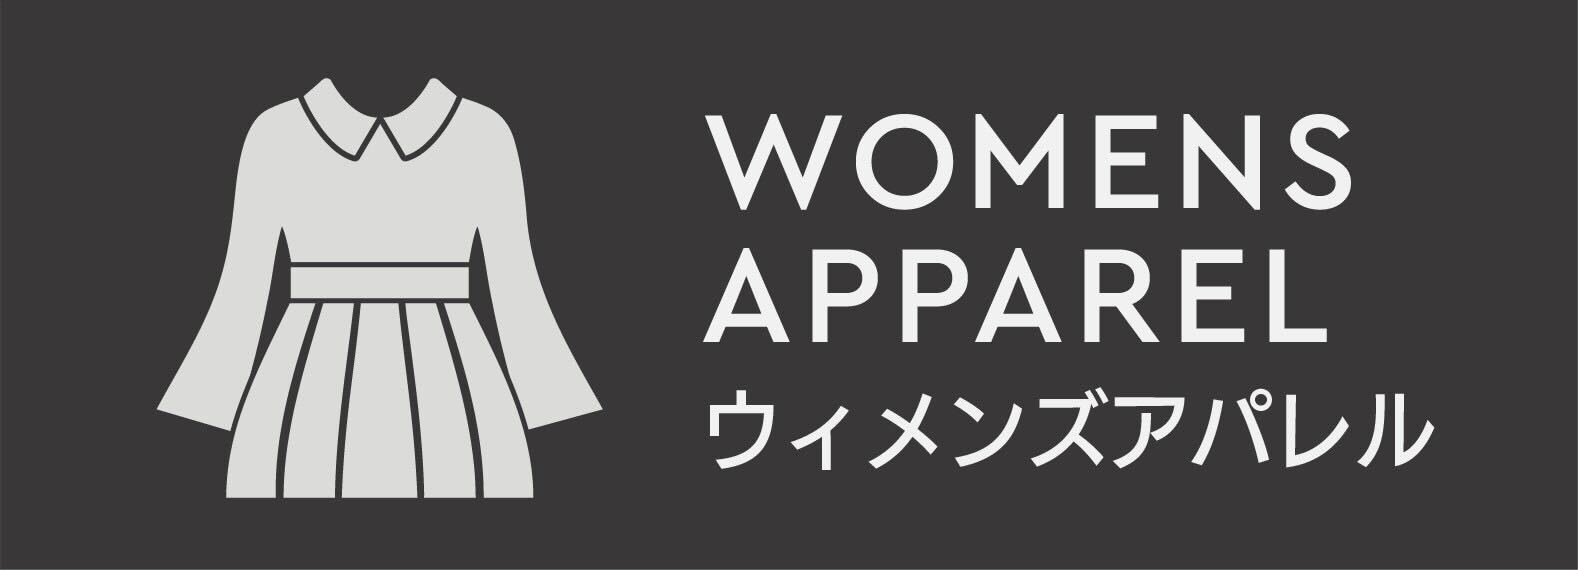 women apparel